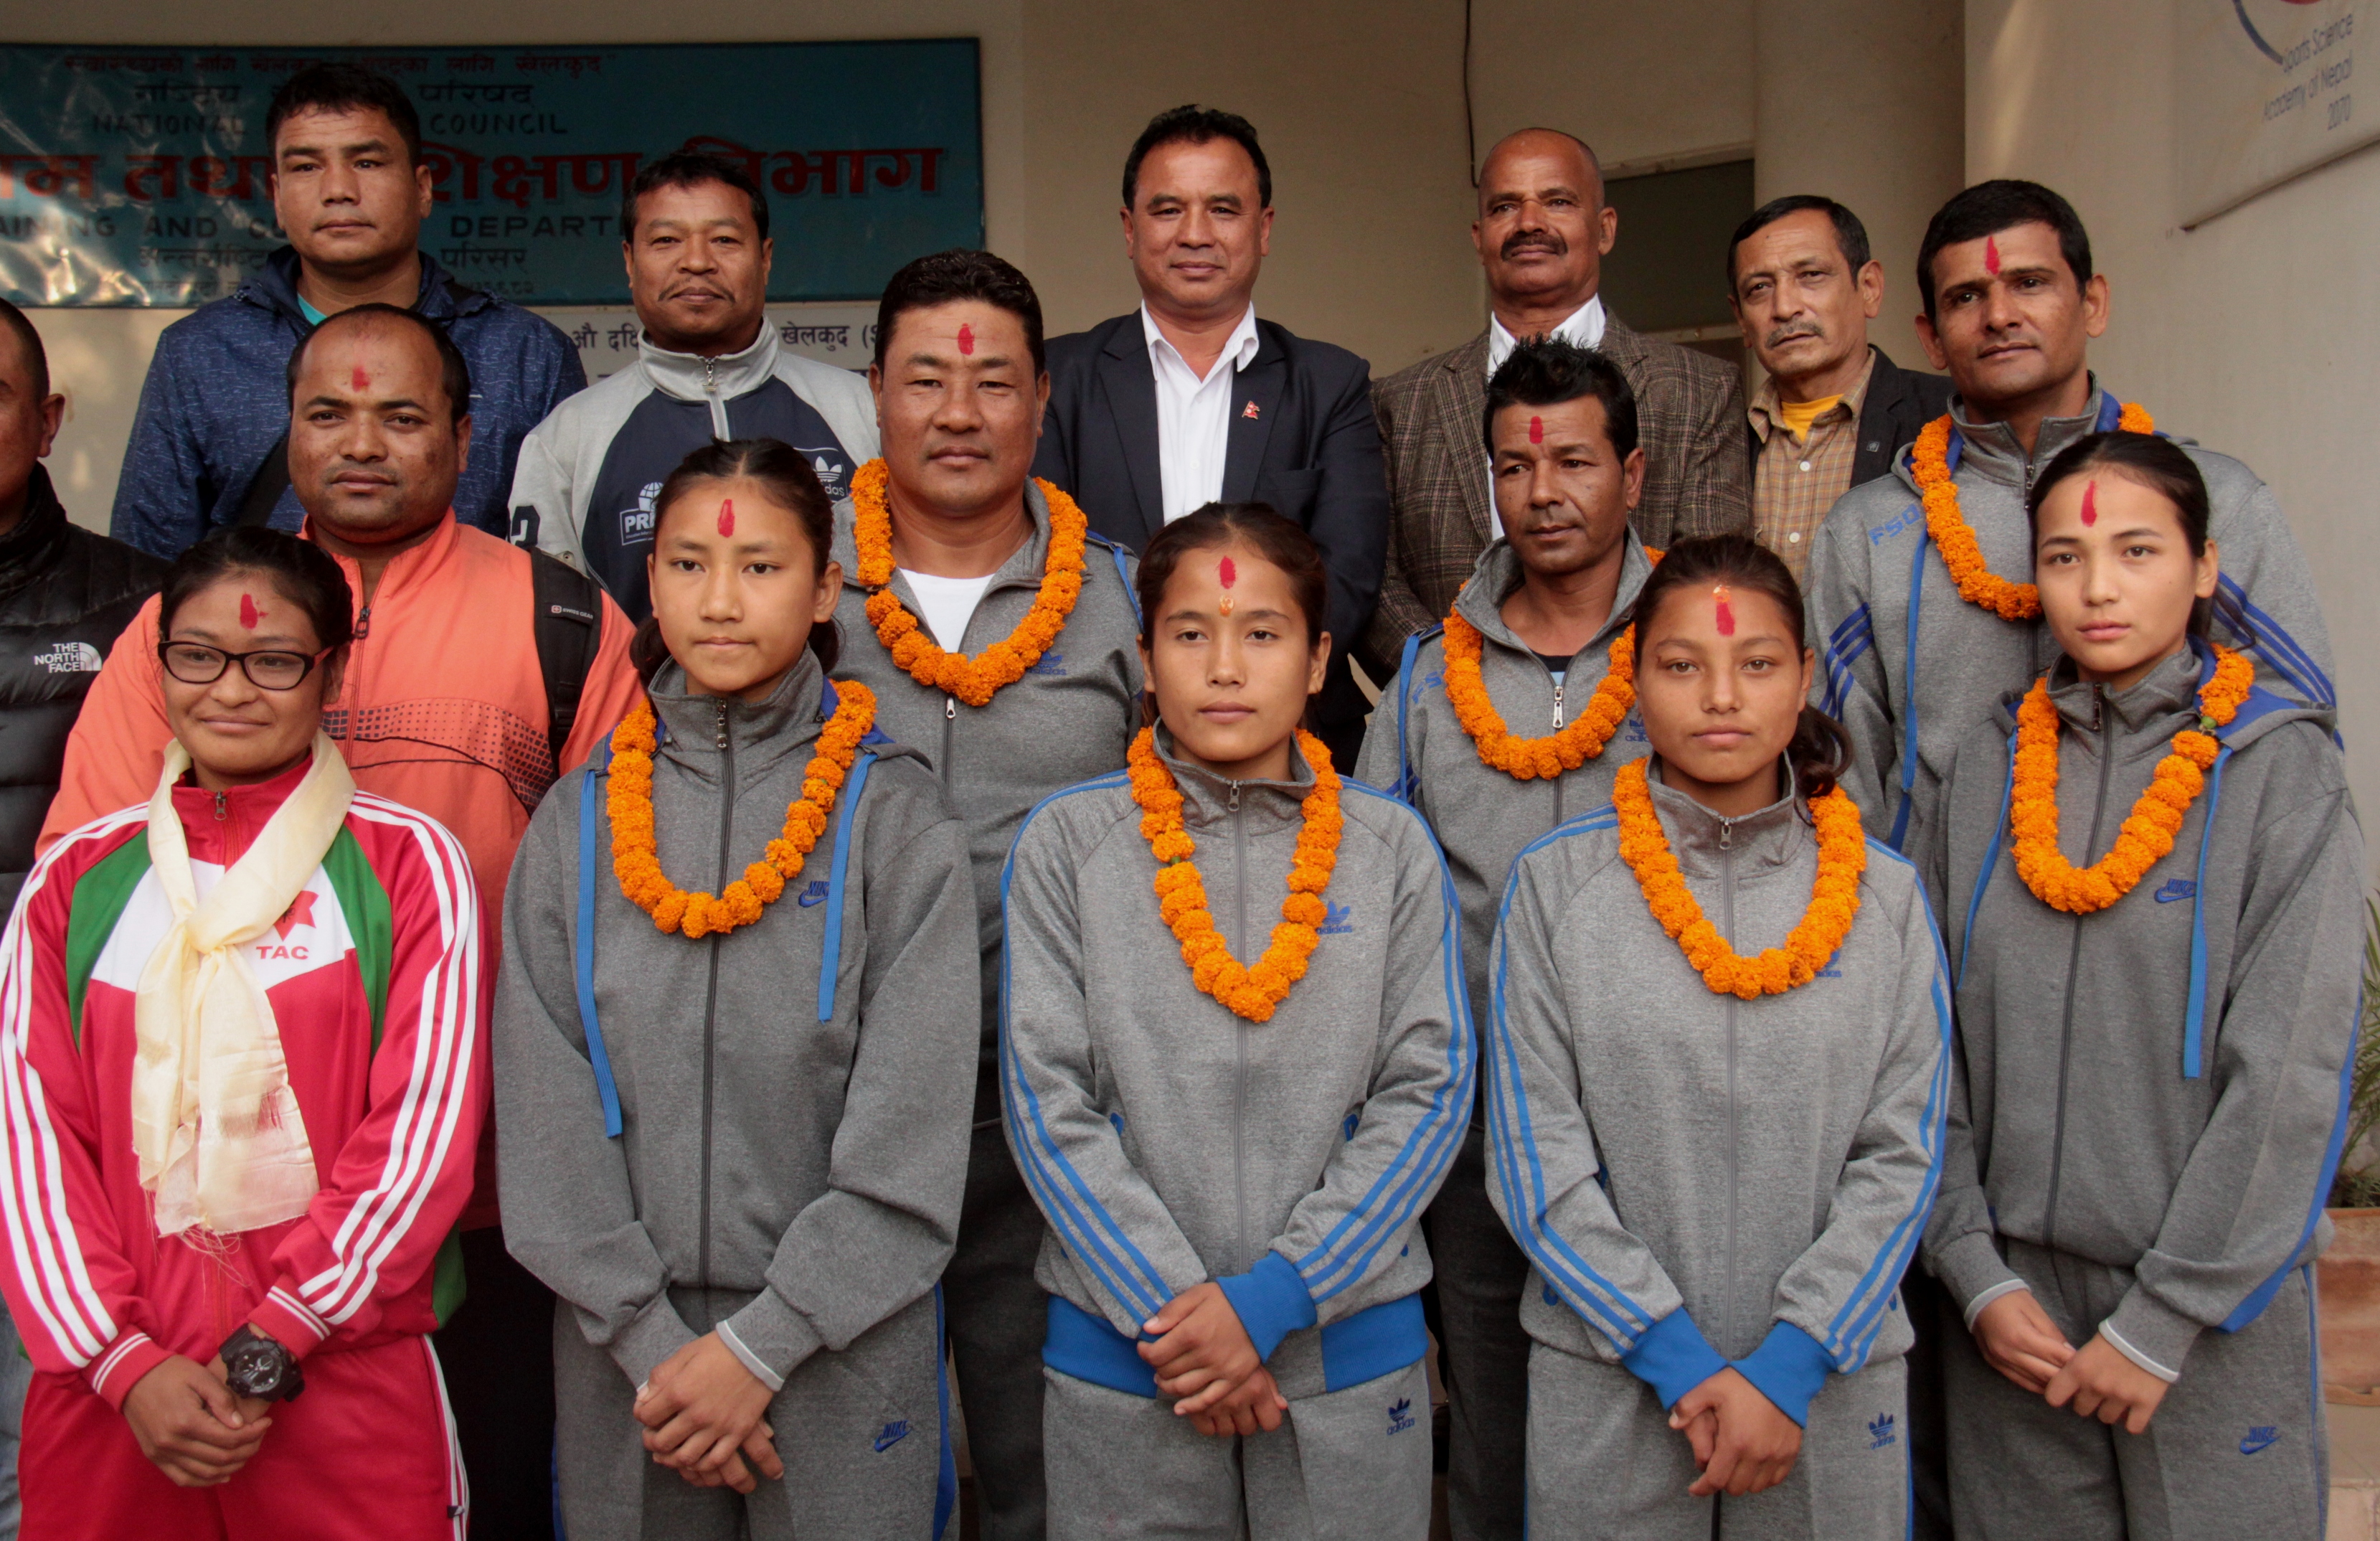 युथ वुमन्स वर्ल्ड बक्सिङ च्याम्पियनसिपमा ४ नेपाली खेलाडी